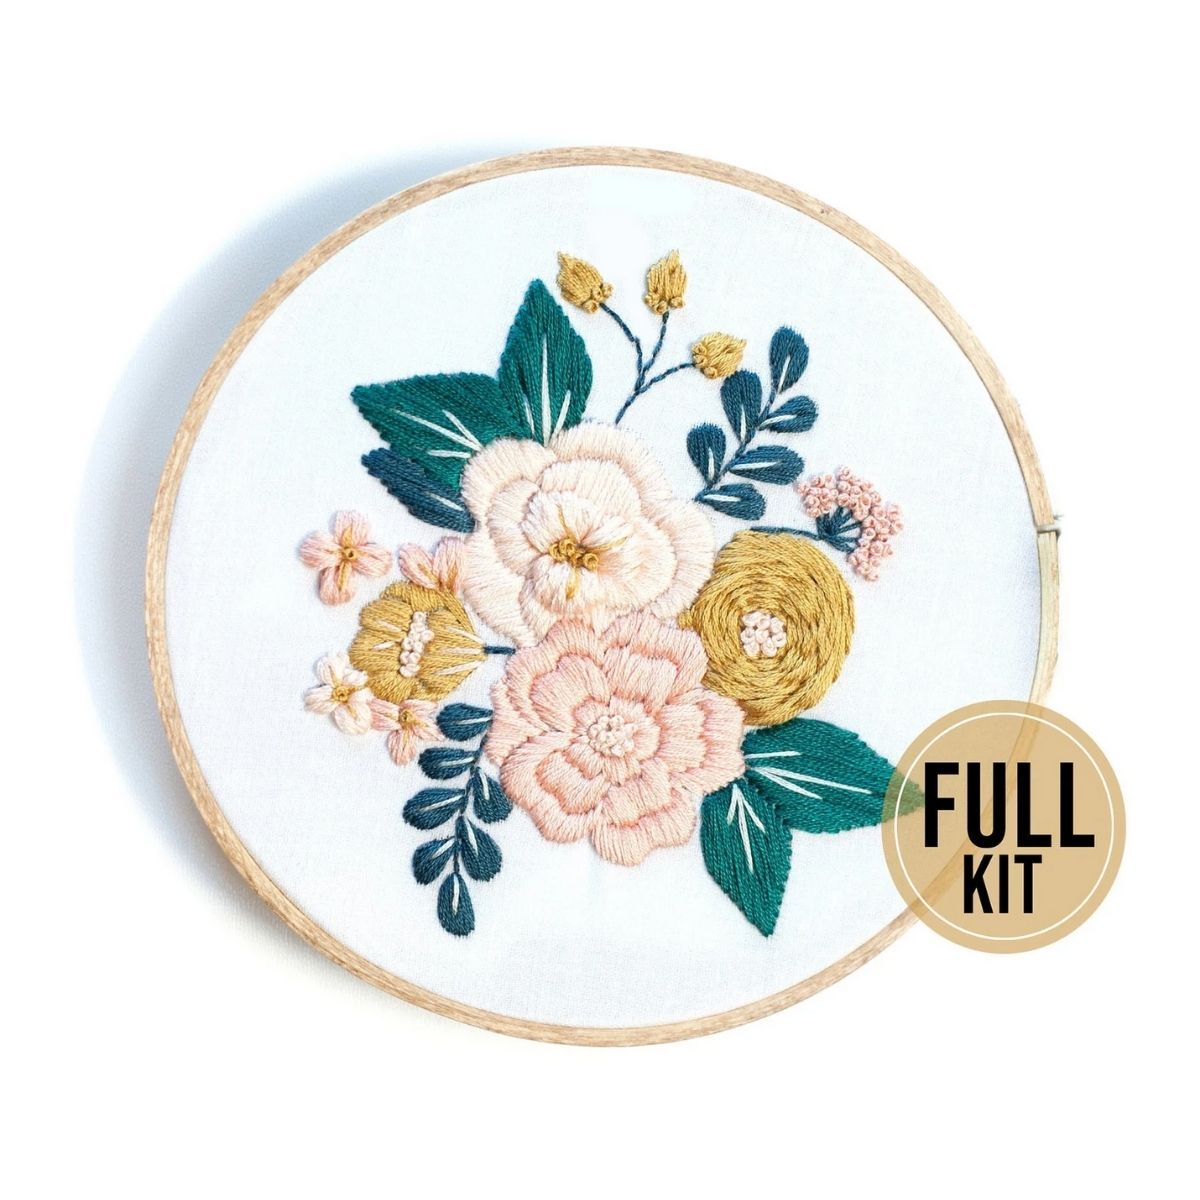 Embroidery Kit Beginner